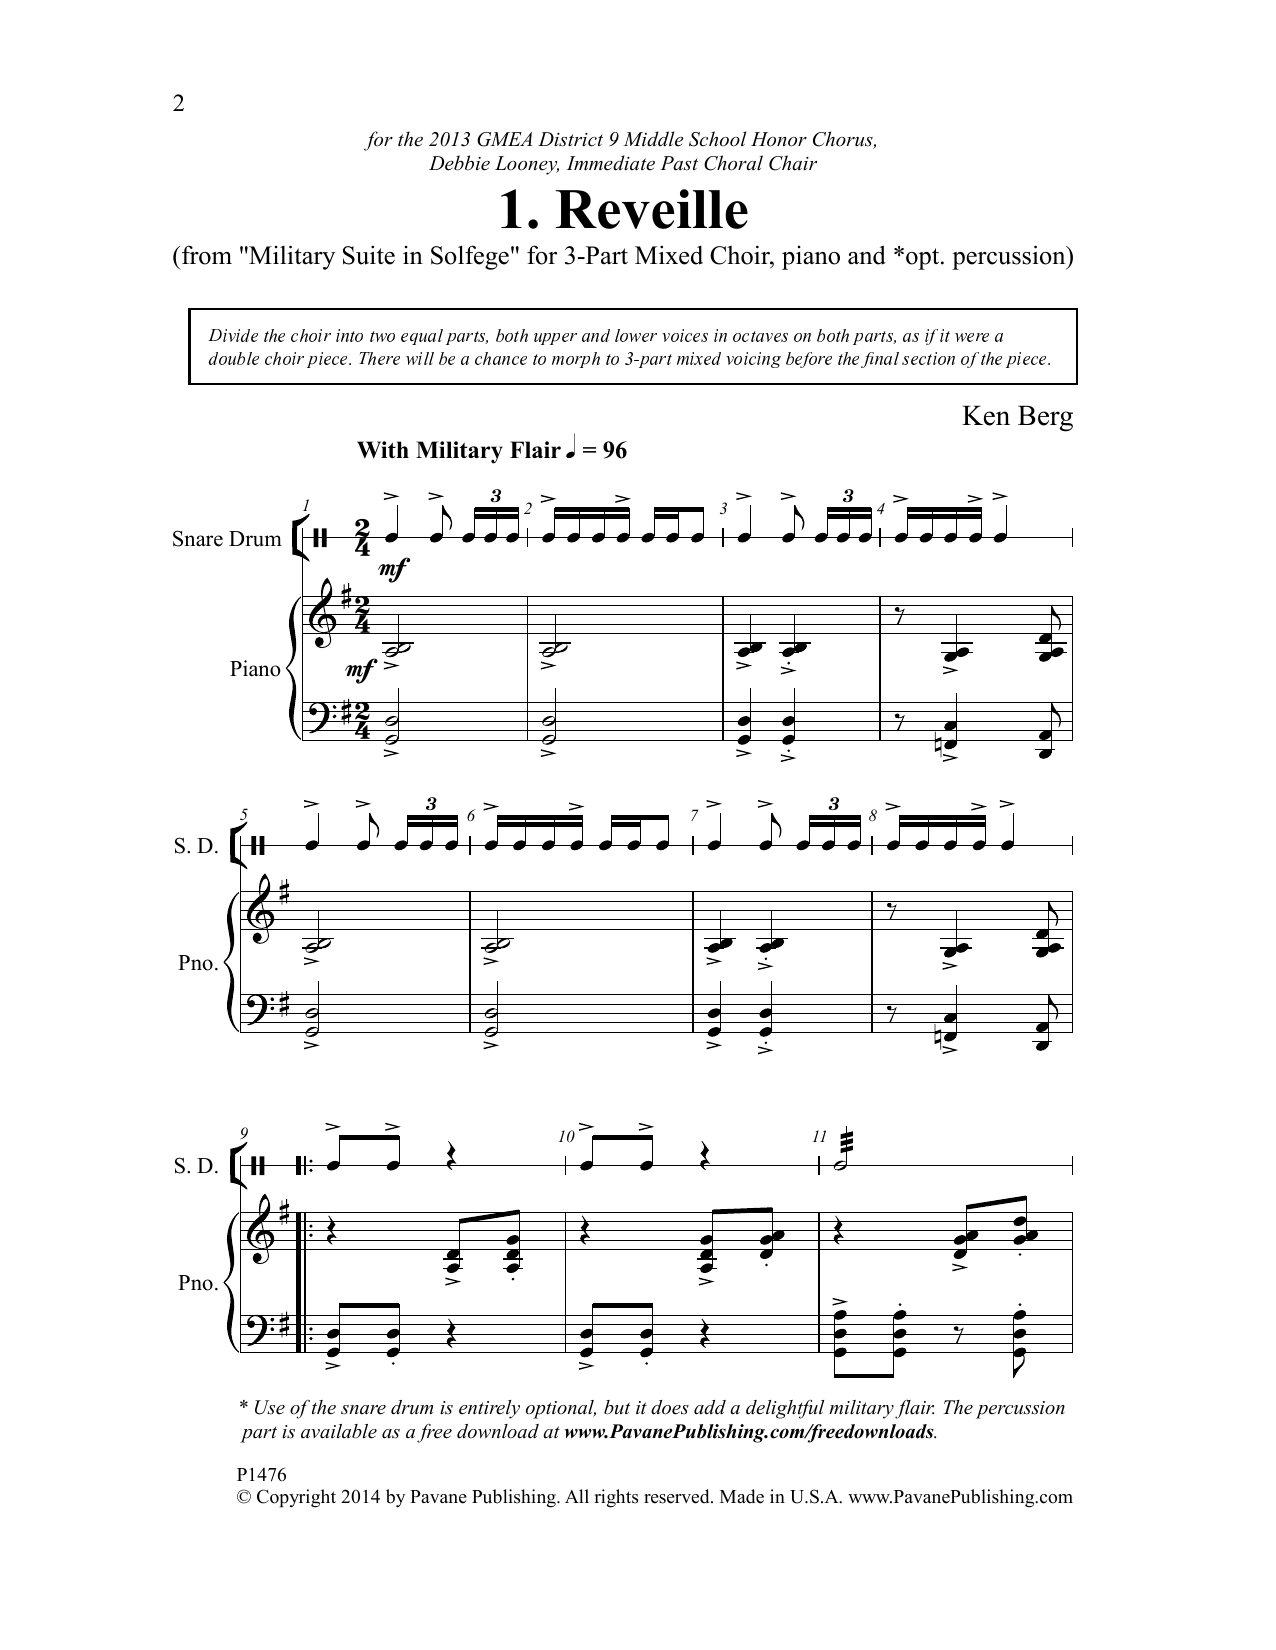 Ken Berg Reveille sheet music notes and chords arranged for 3-Part Mixed Choir